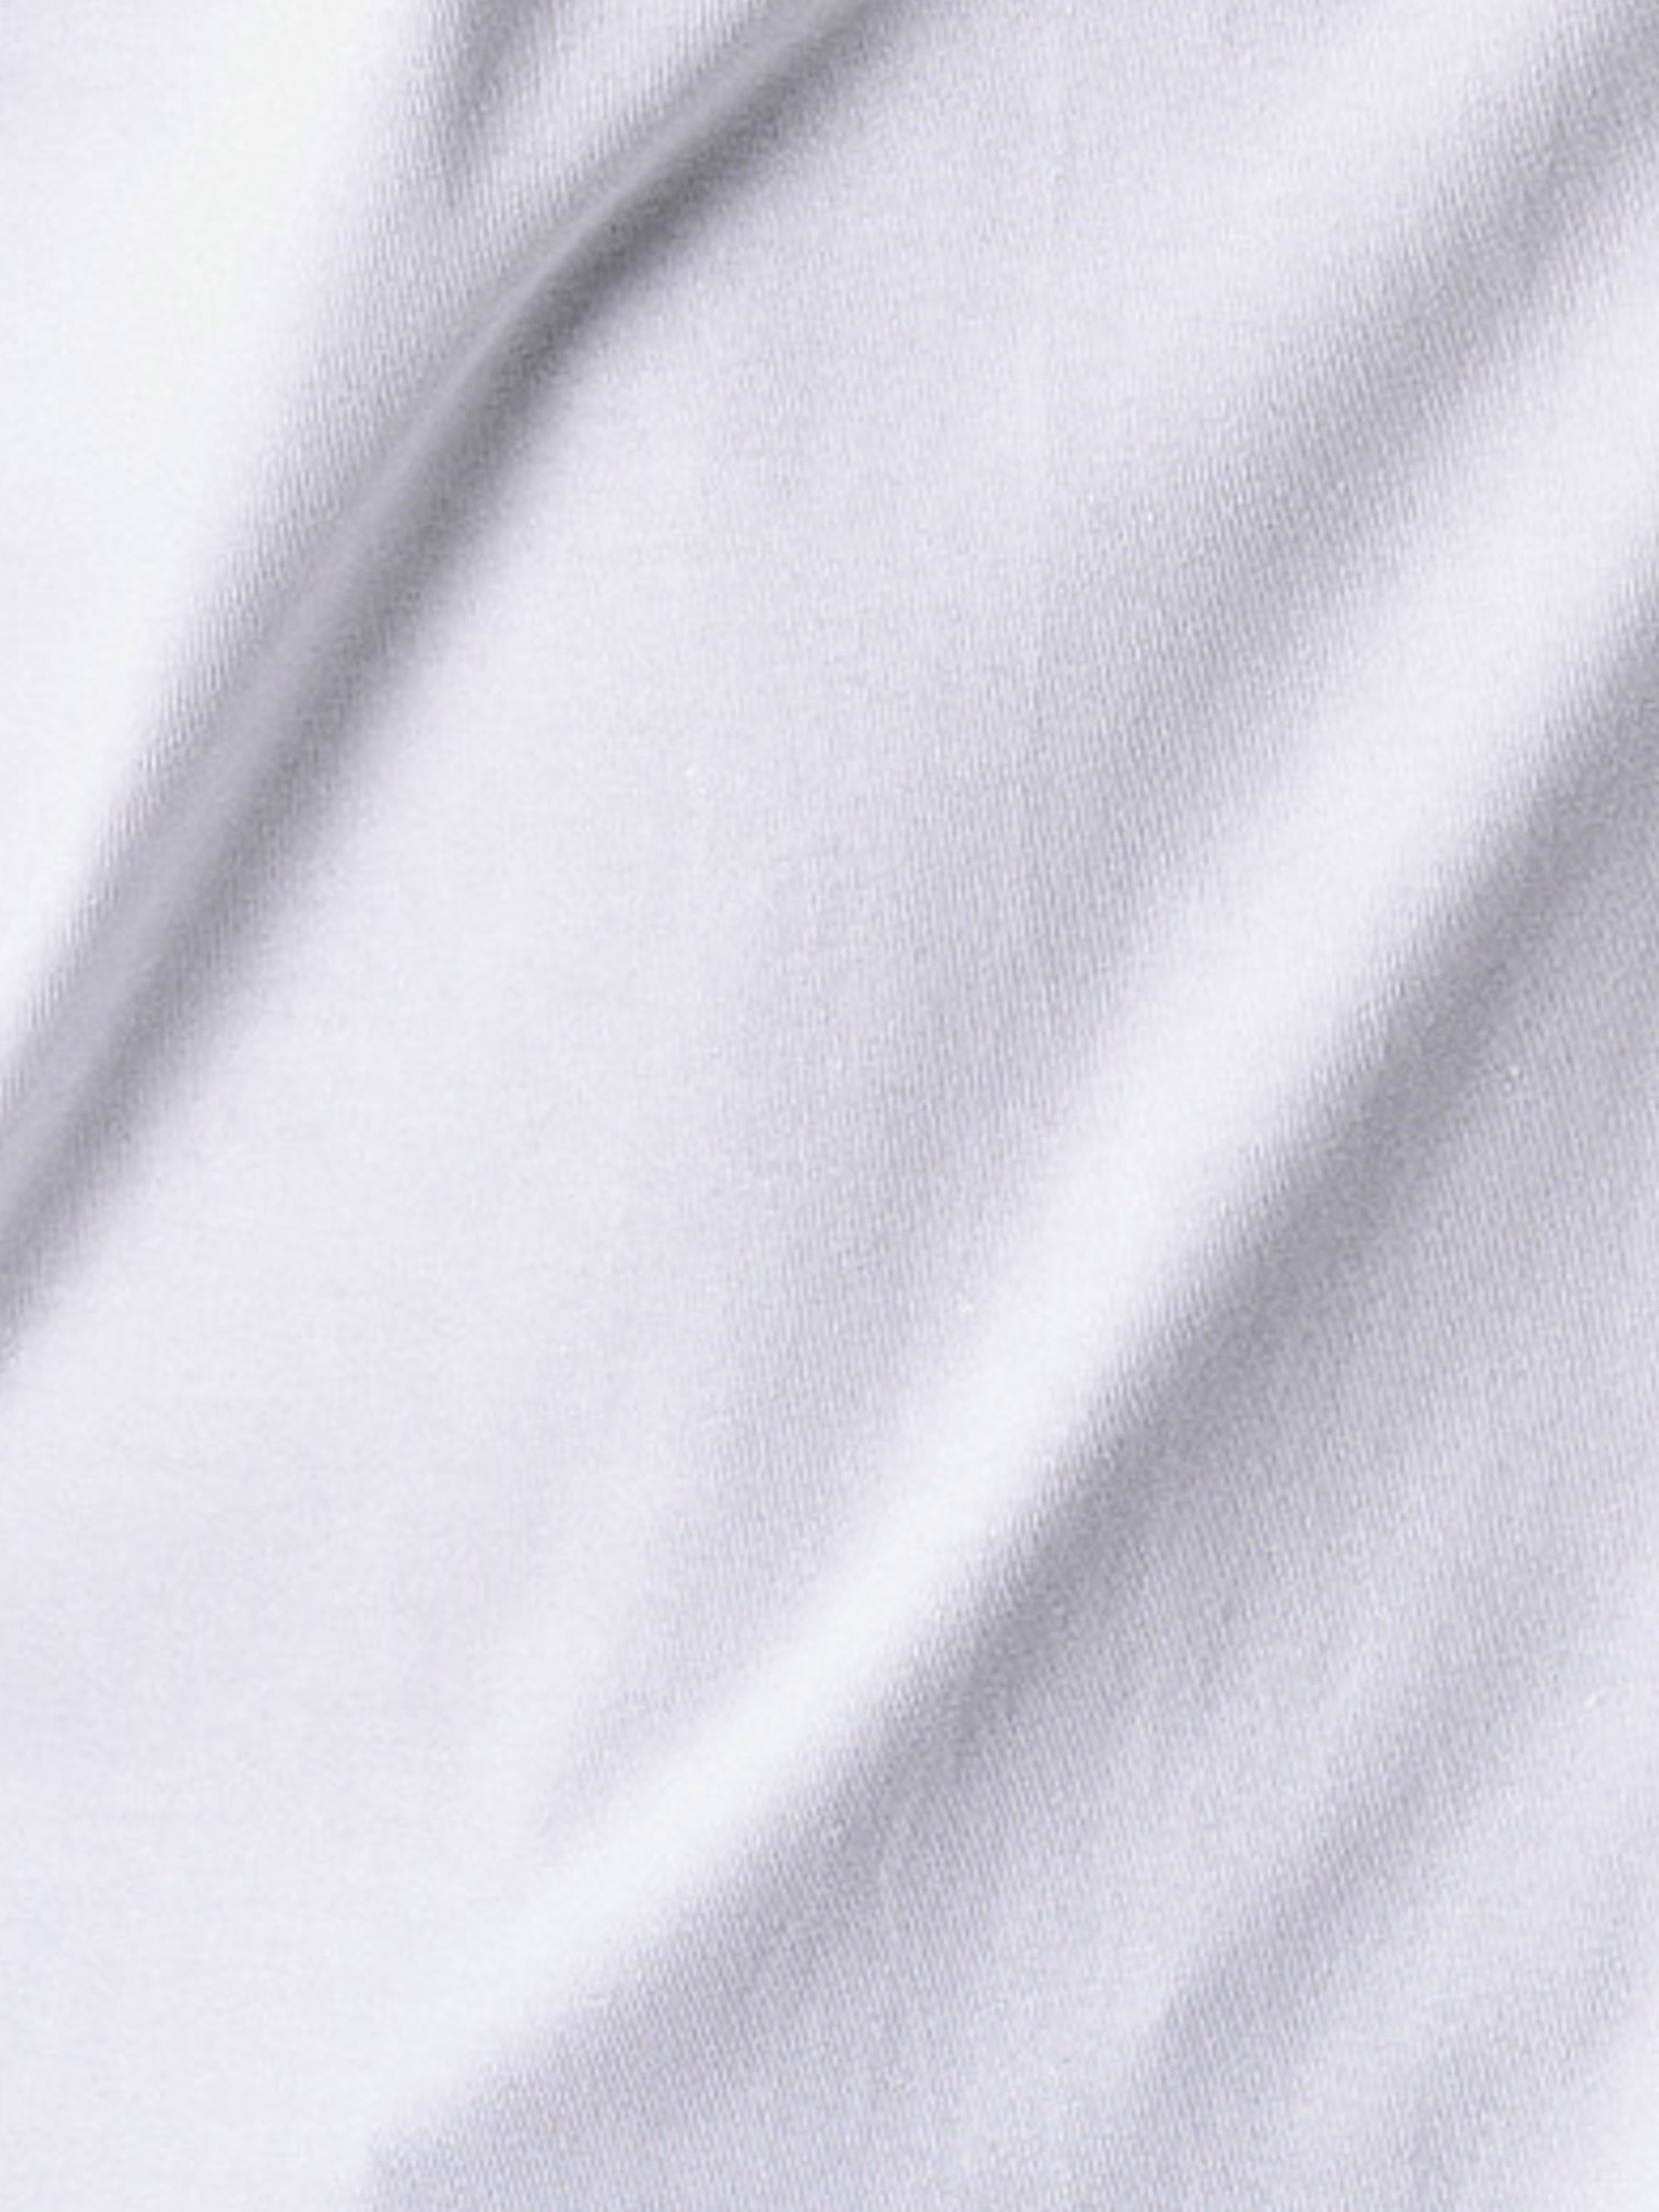 Braden White T-shirt 1032